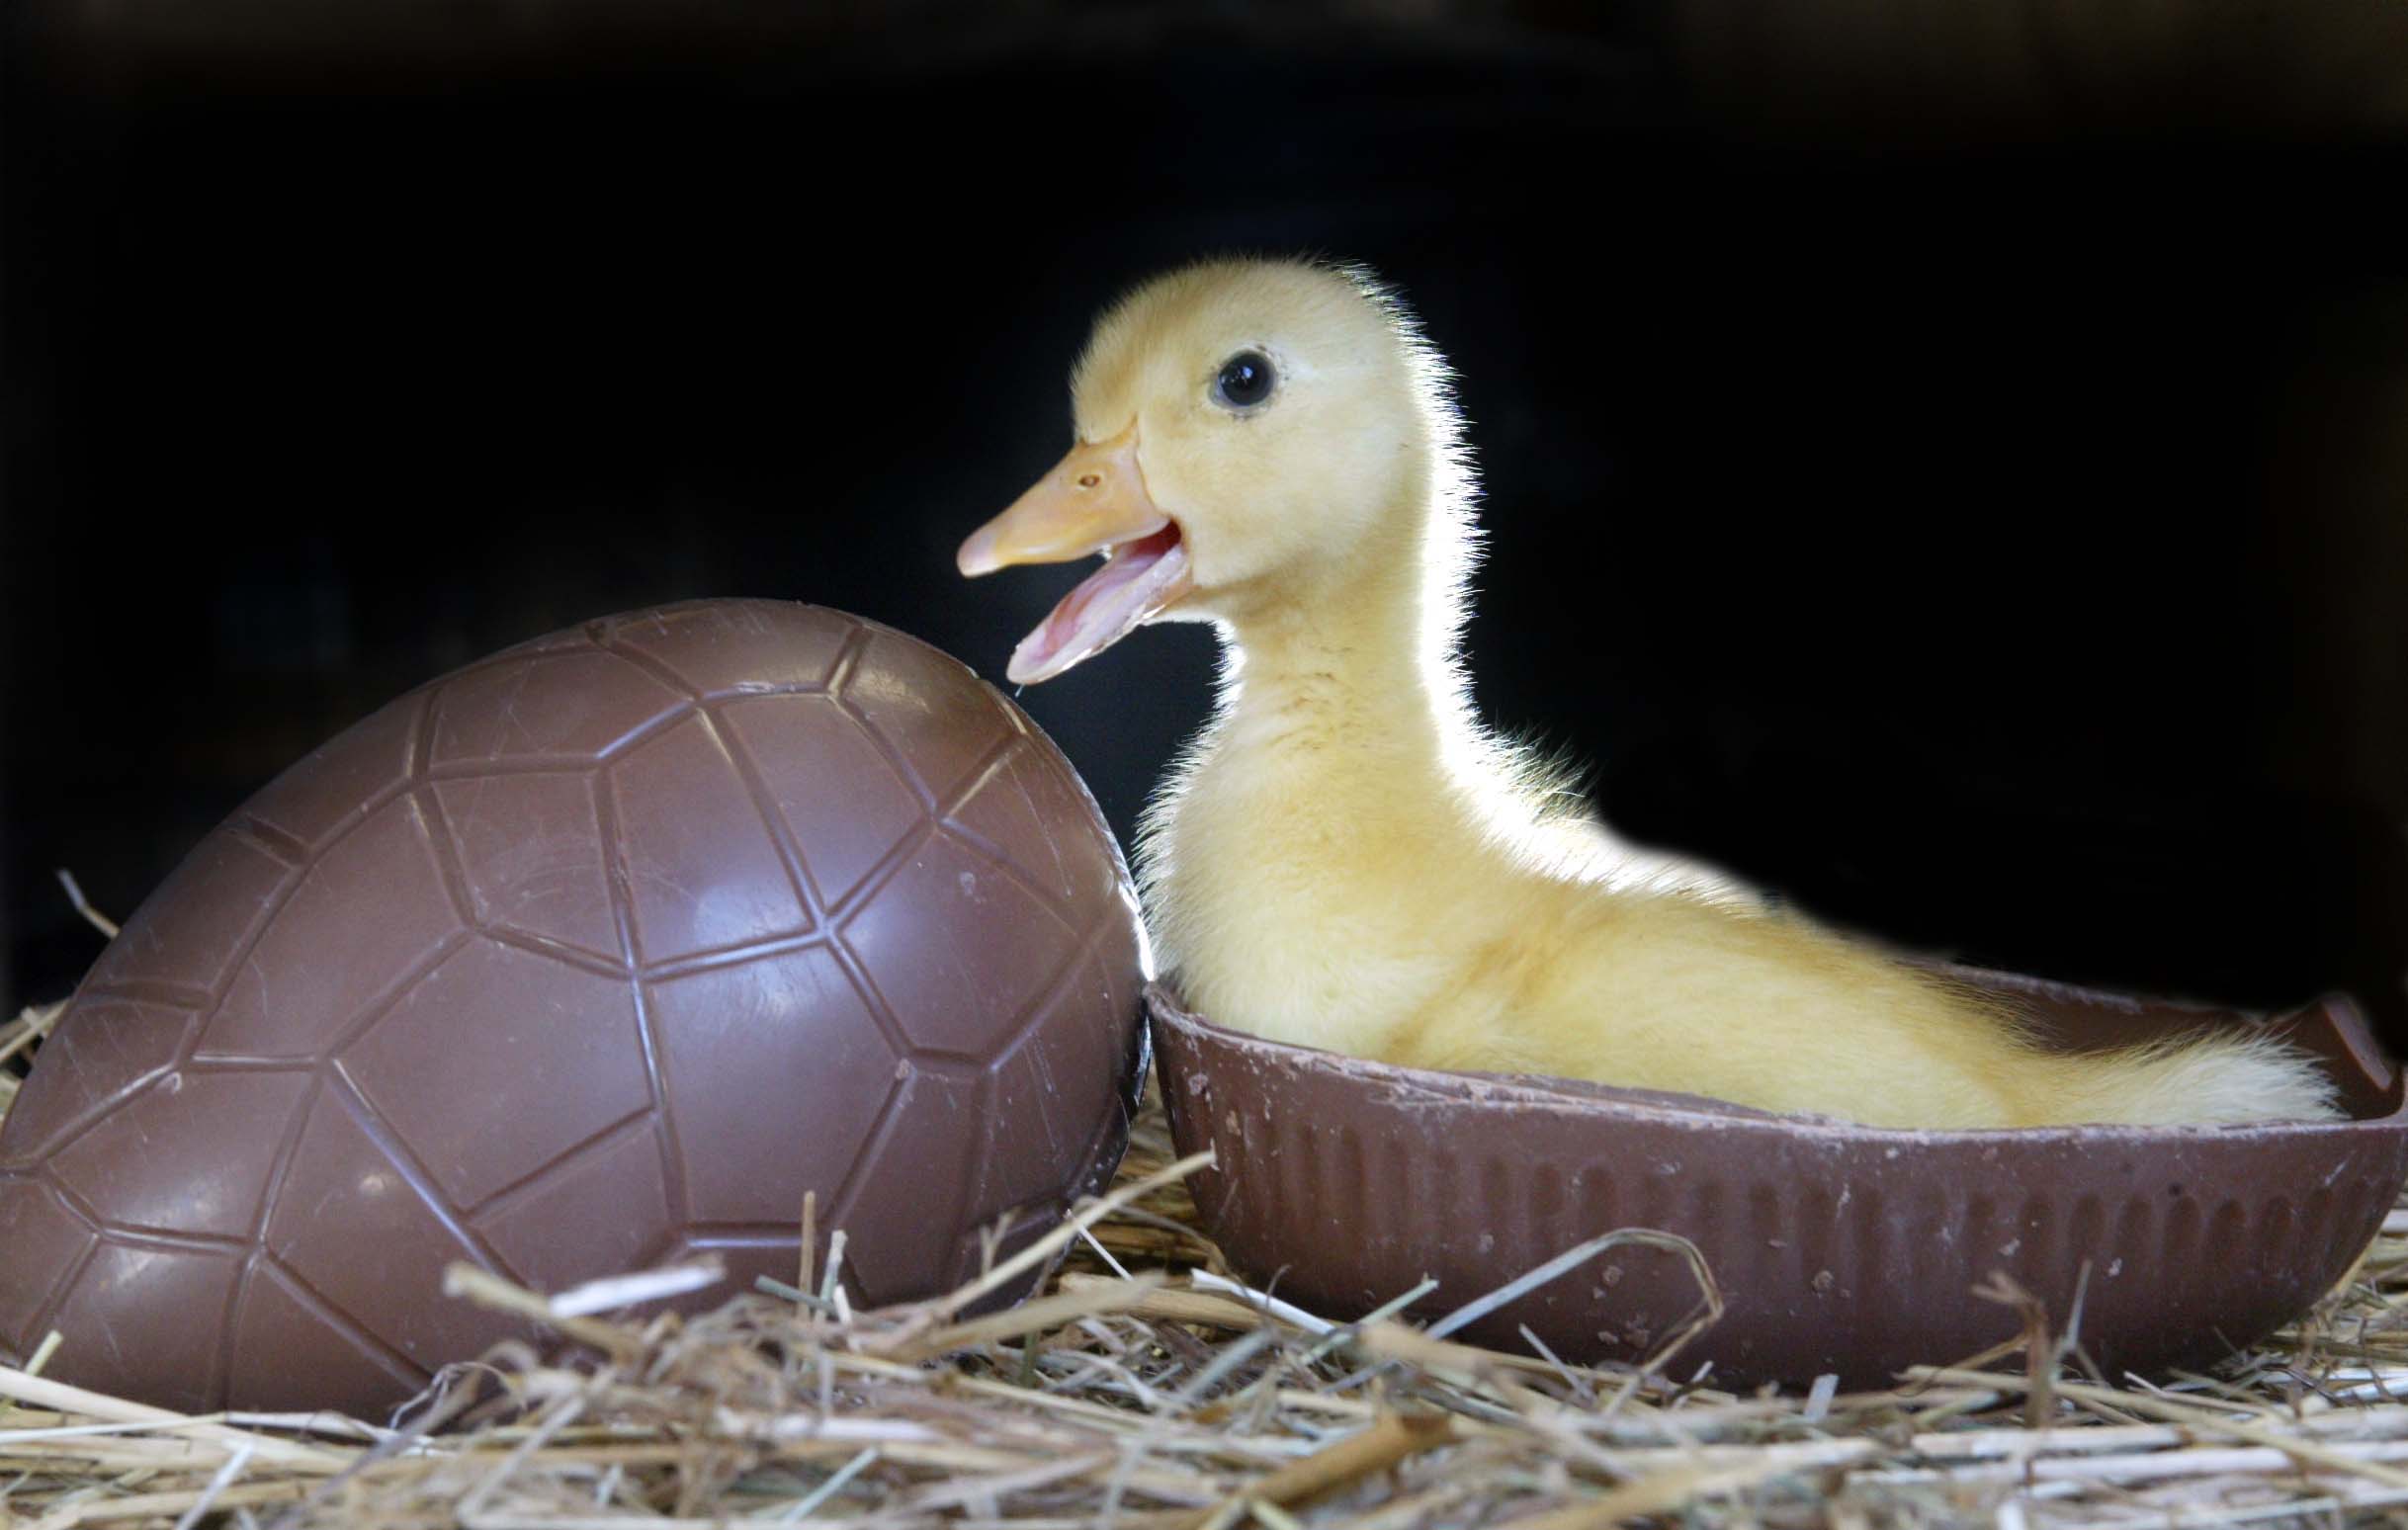 Easter ducklings